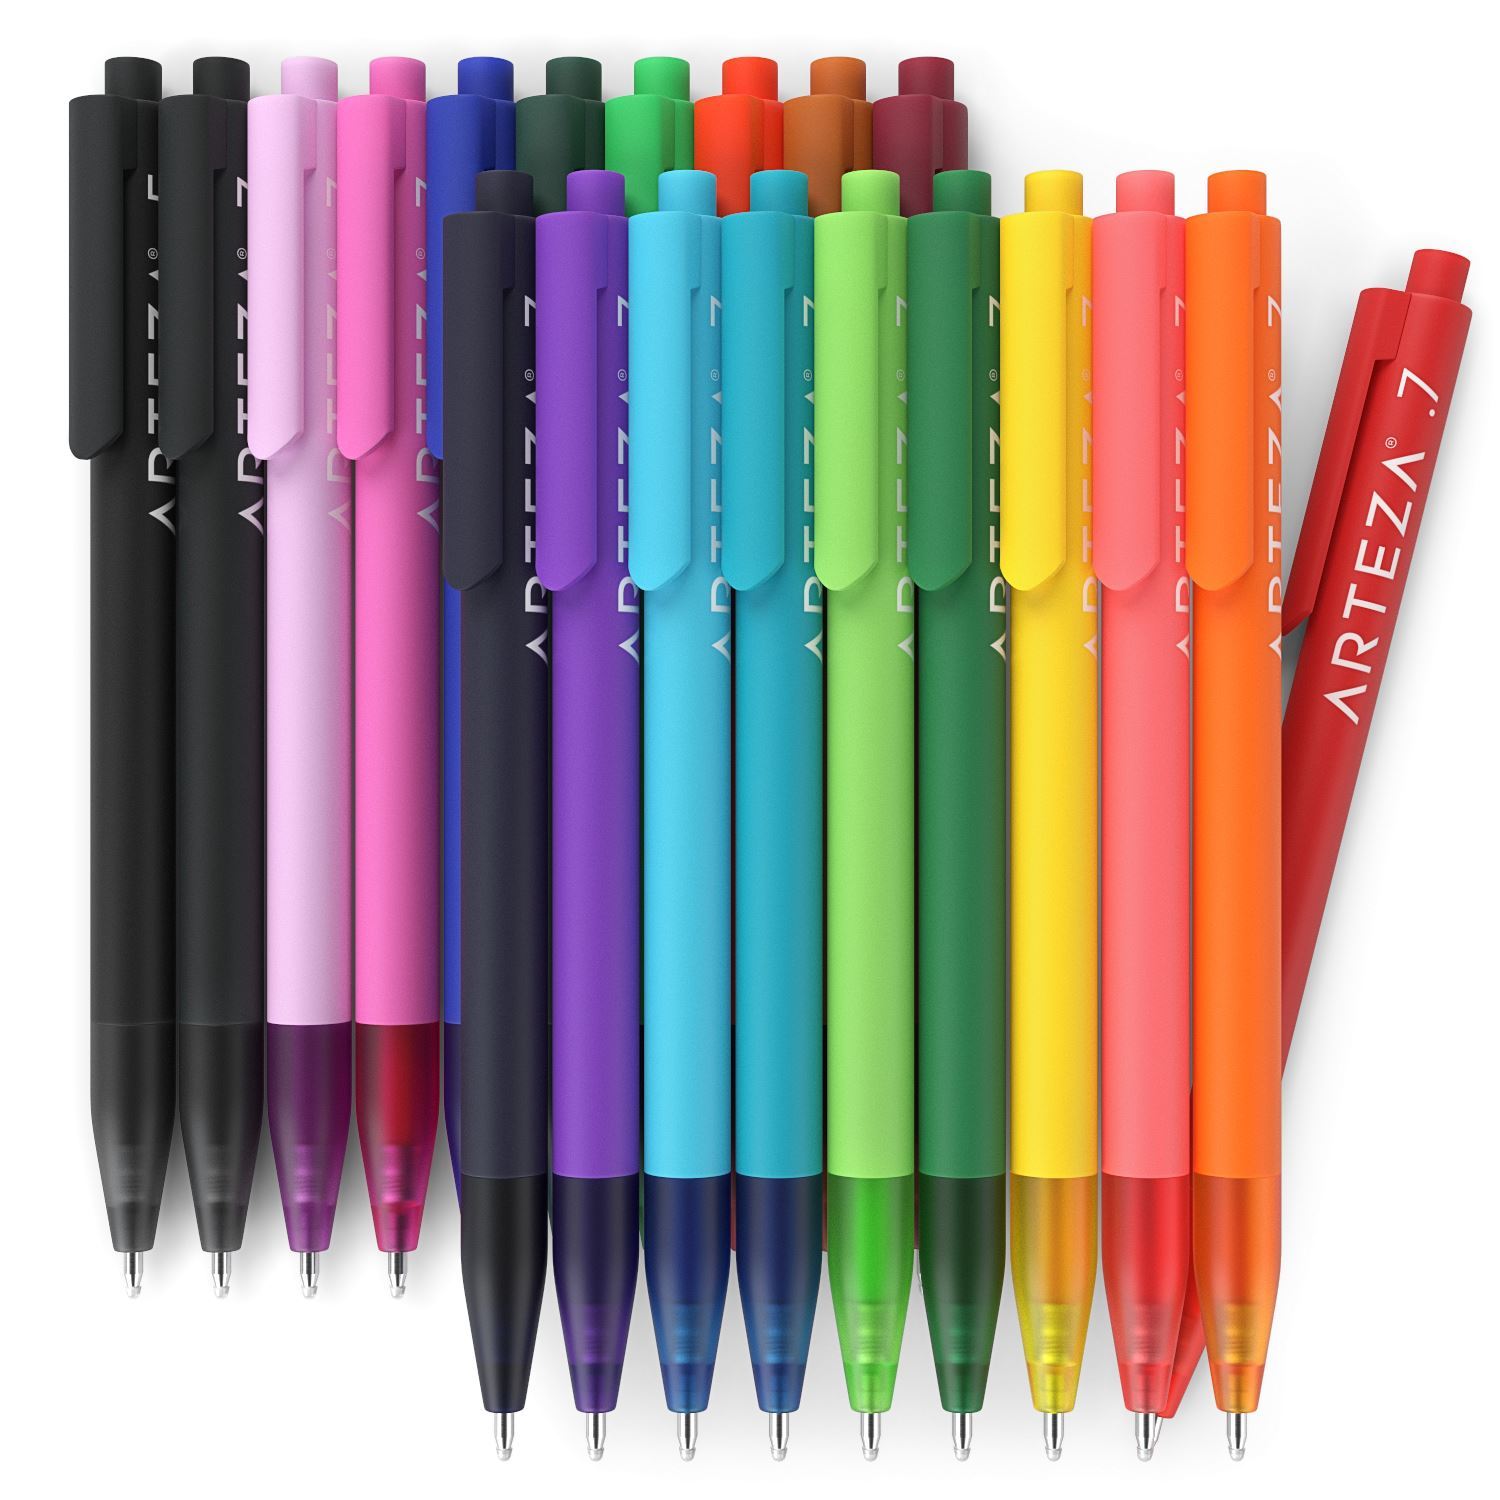 Arteza Glitter Gel Ink Pens Review